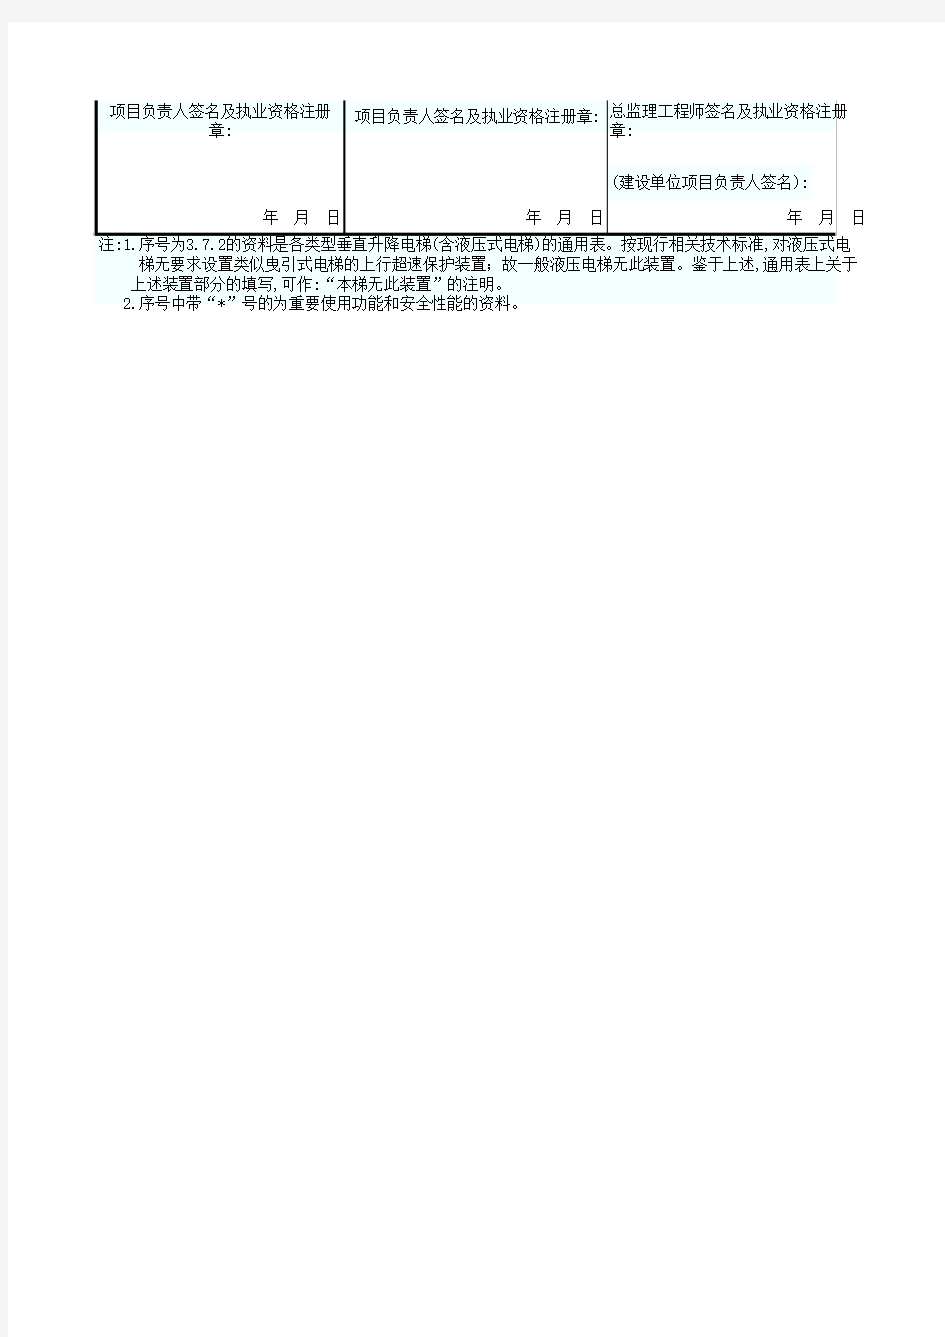 0817.18.电梯分部工程质量控制资料核查记录(3.液态式电梯单台用册之二)GD3060218-2